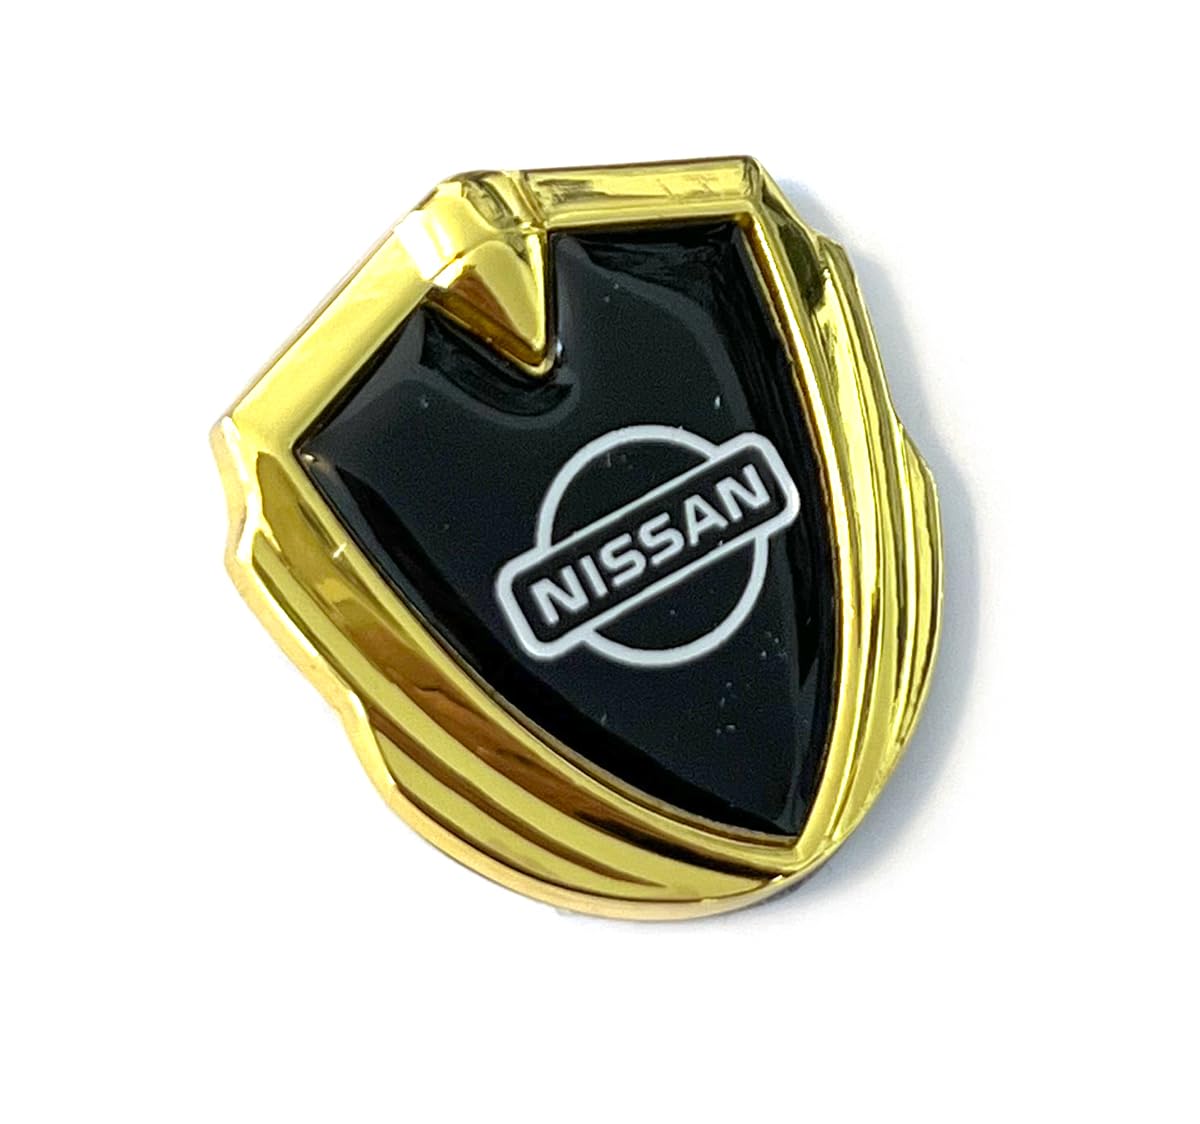 Emblem aus Metal in Gold Aufkleber mit Klebepad passend für Auto Tuning Style mit Logo. Für Fender, Gebäude, Innerraum usw. Sticker mit Emblem. (35mm x 40mm x 5mm) (Nissan) von SVV